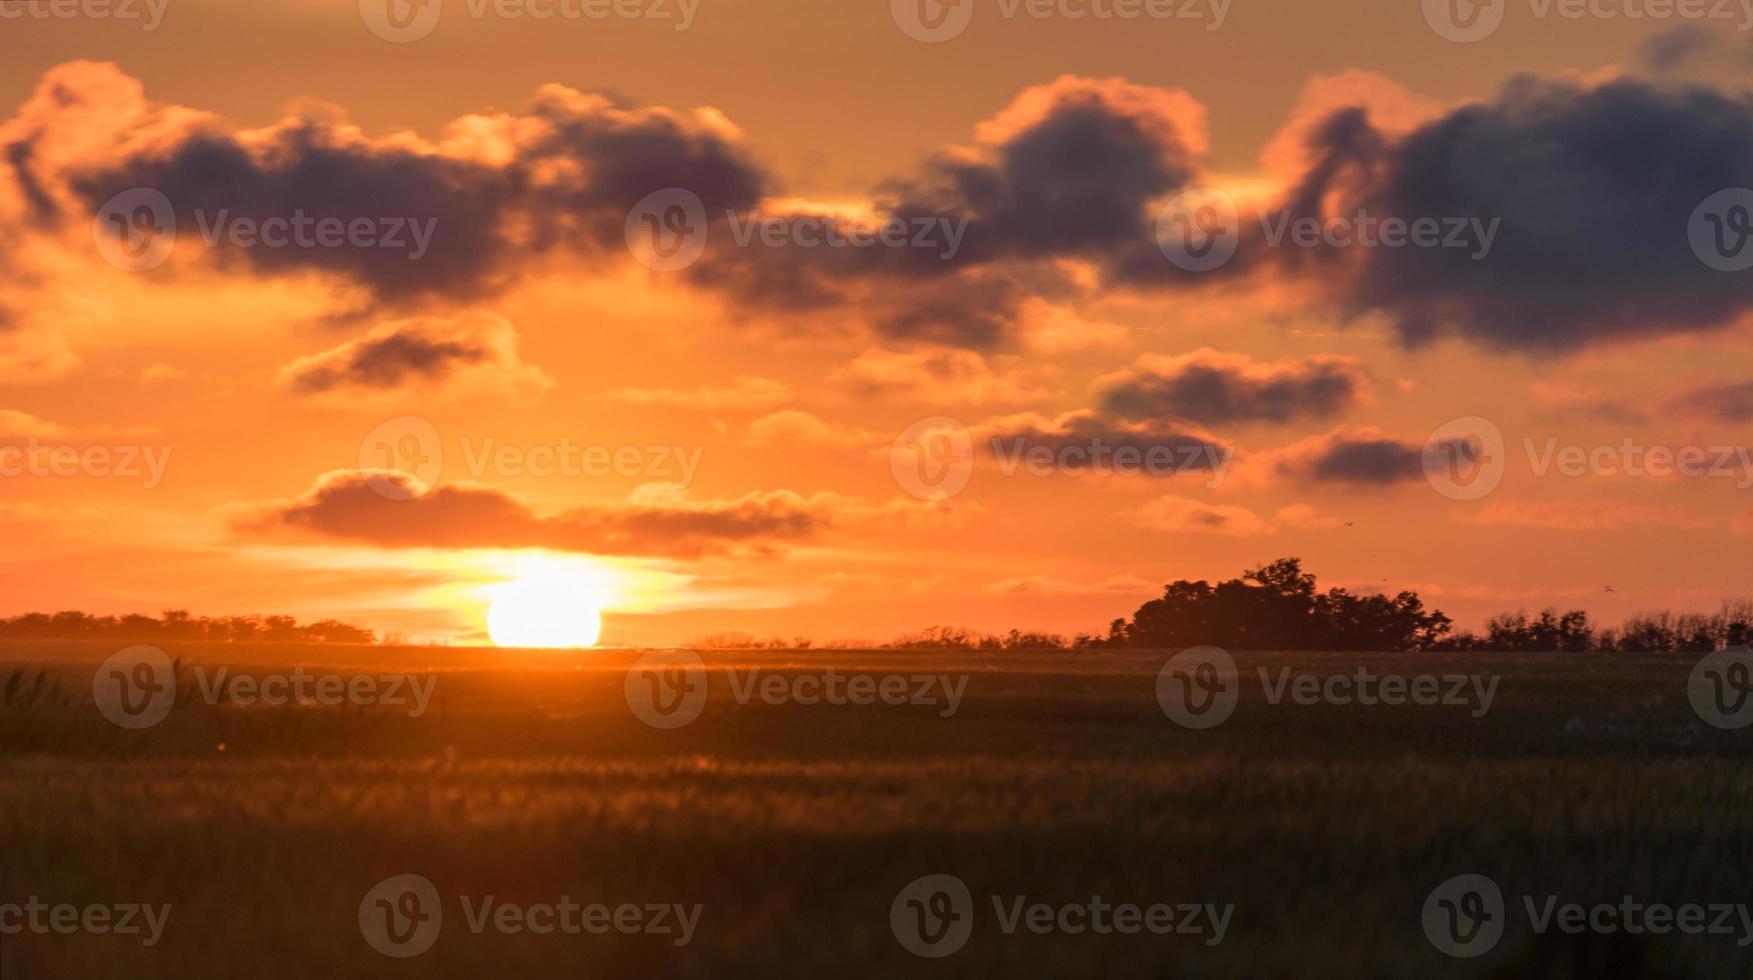 prachtige zonsondergang over het veld blagoveshenskaya, rusland foto